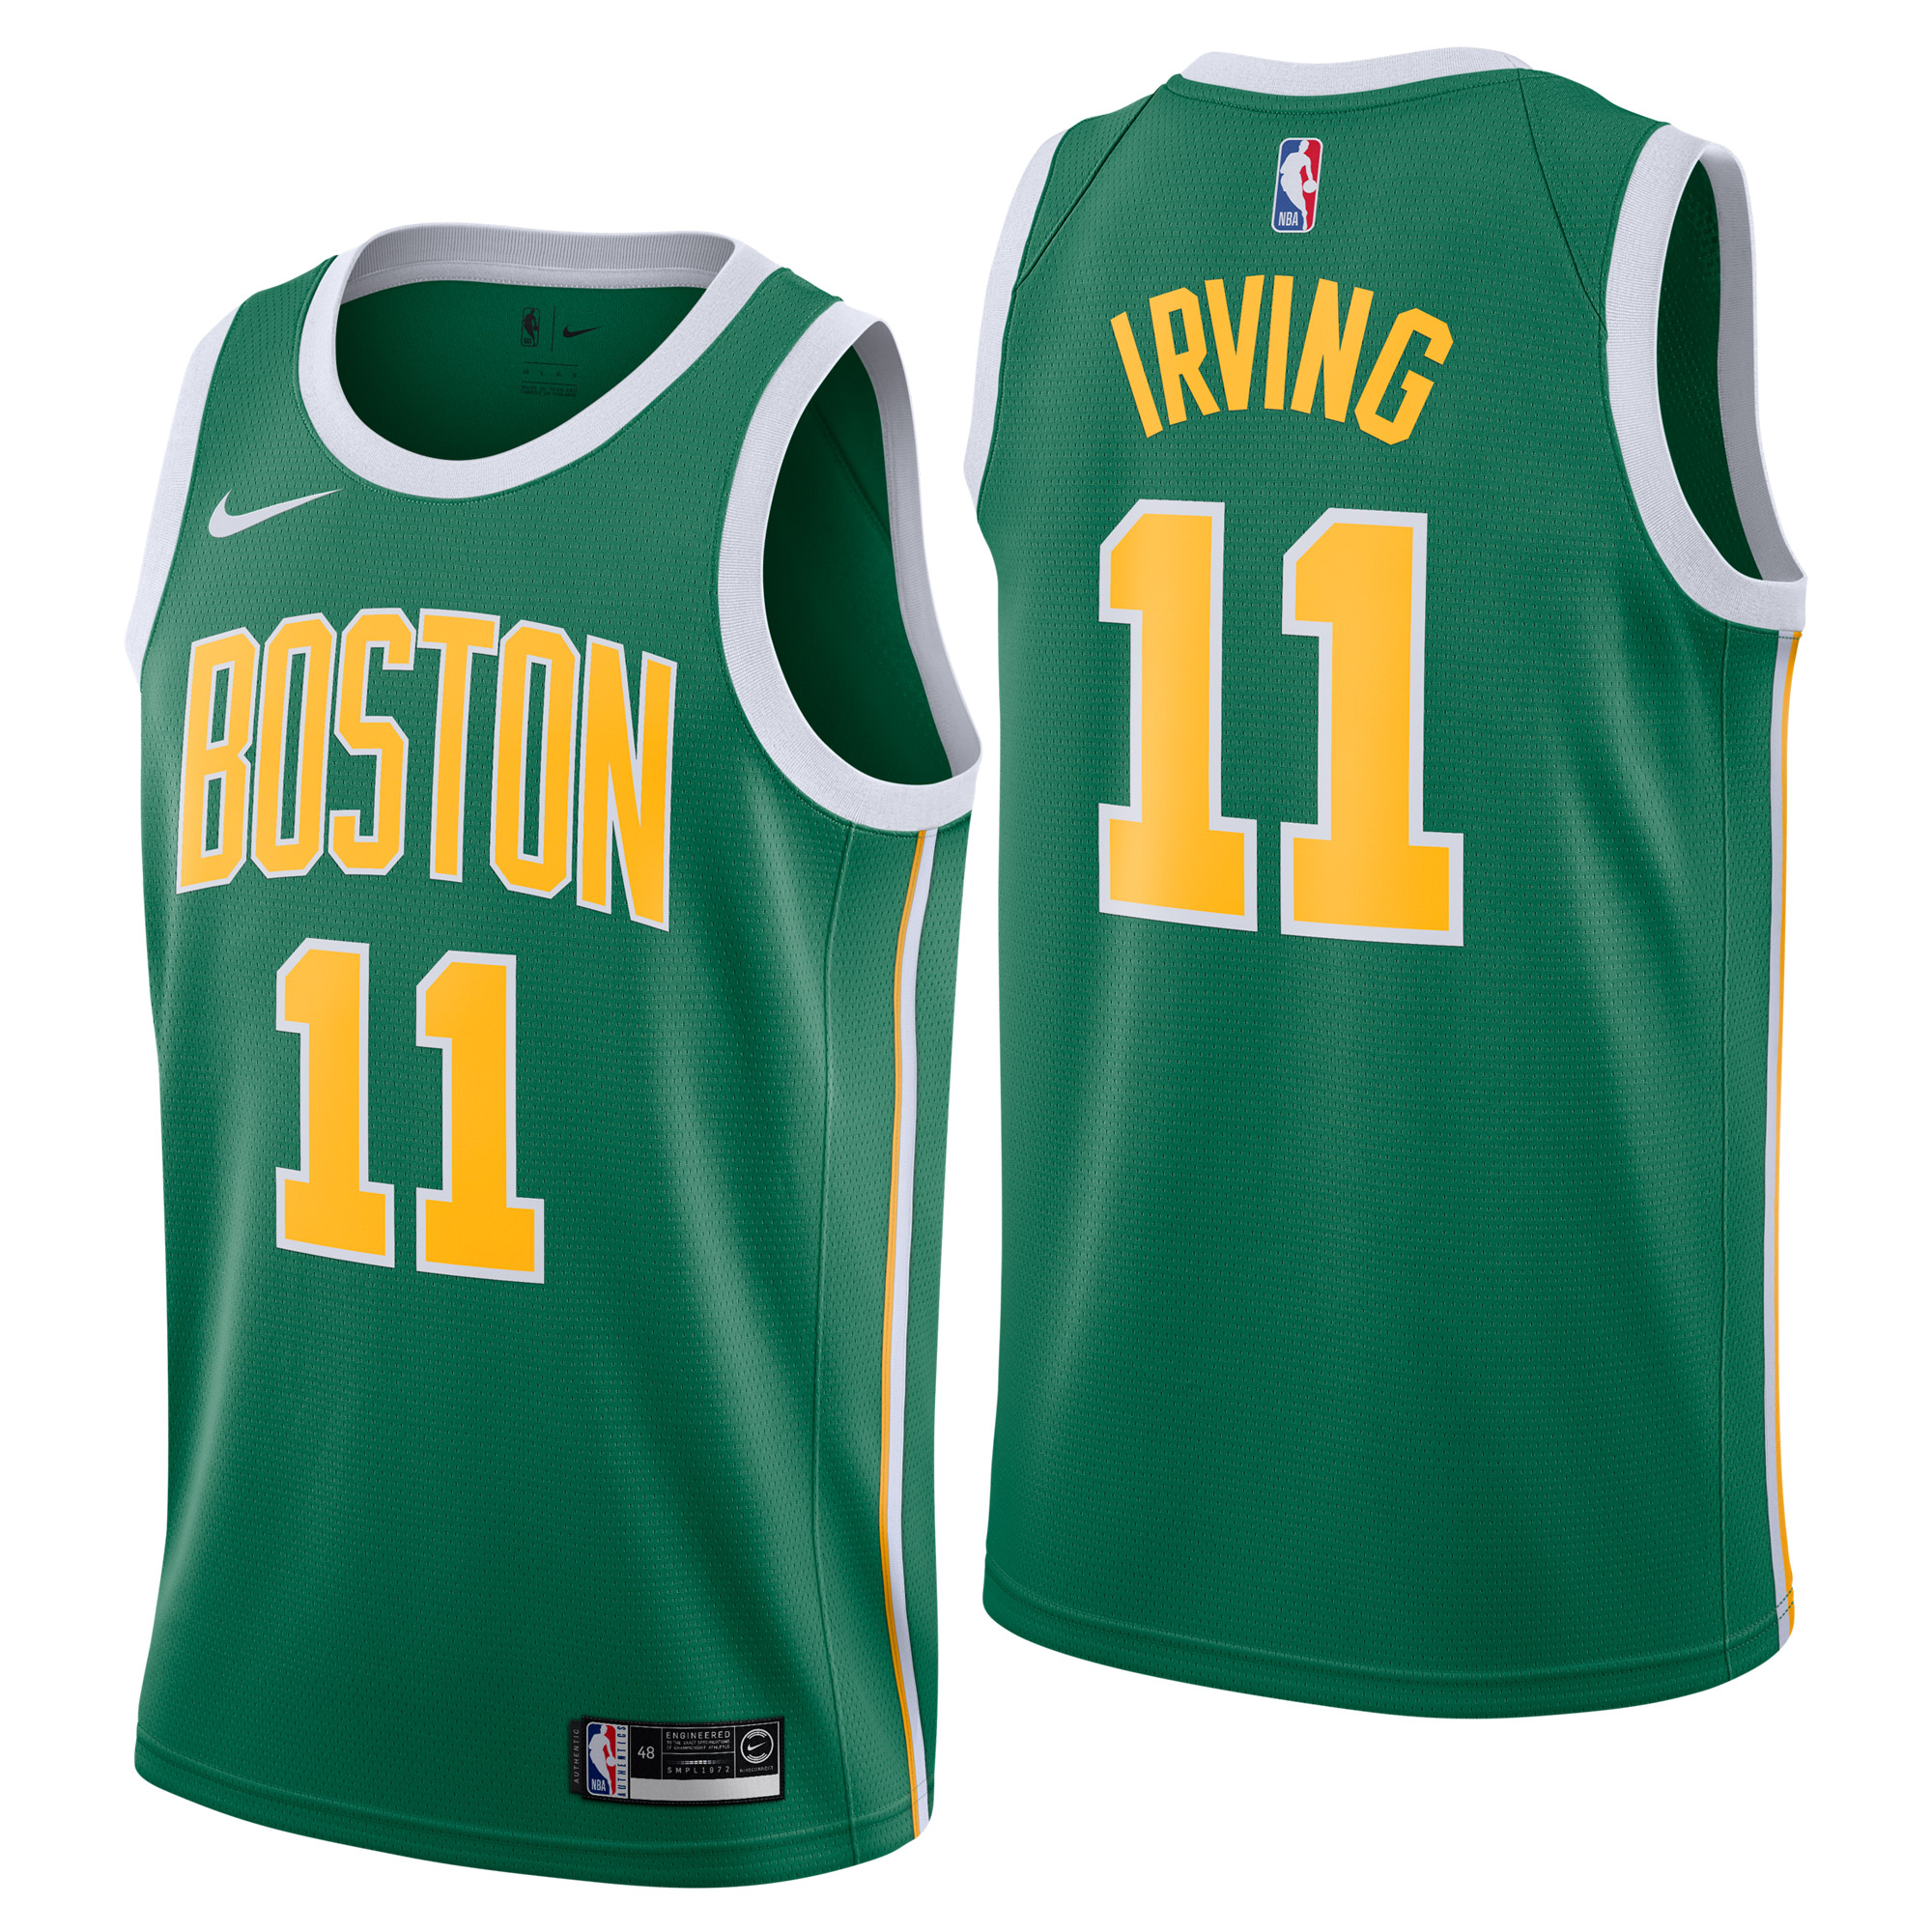 "Boston Celtics Nike Earned Edition Swingman Jersey - Kyrie Irving - Mens"